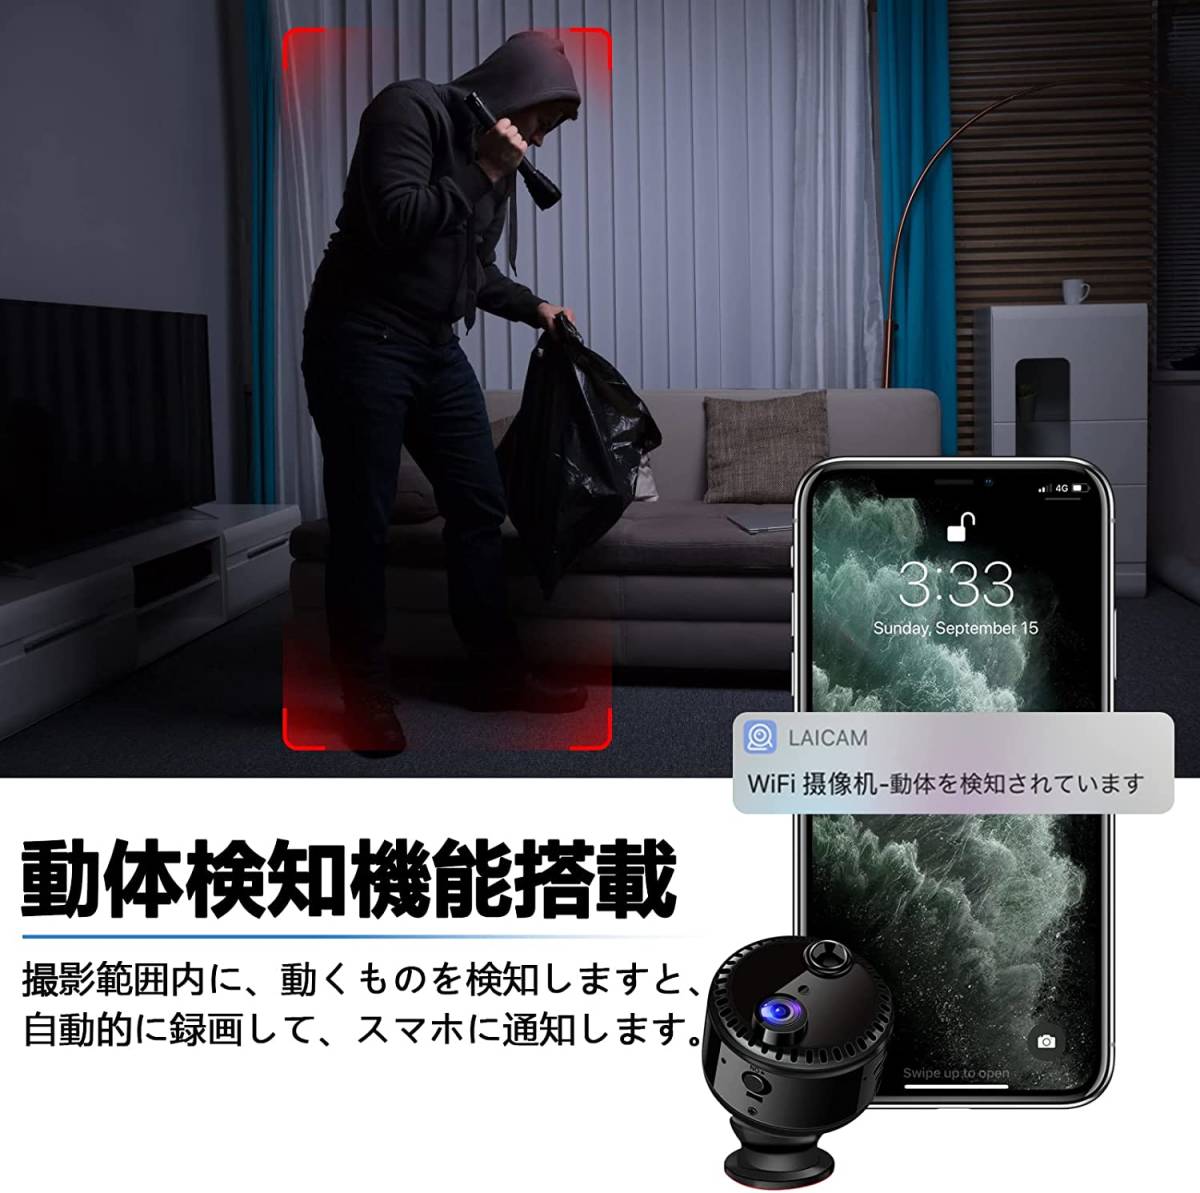 T-113 камера системы безопасности домашнее животное камера уход камера младенец камера высокая четкость качество изображения ночное видение функция инфракрасные лучи фотосъемка длина час видеозапись запись WIFI функция 